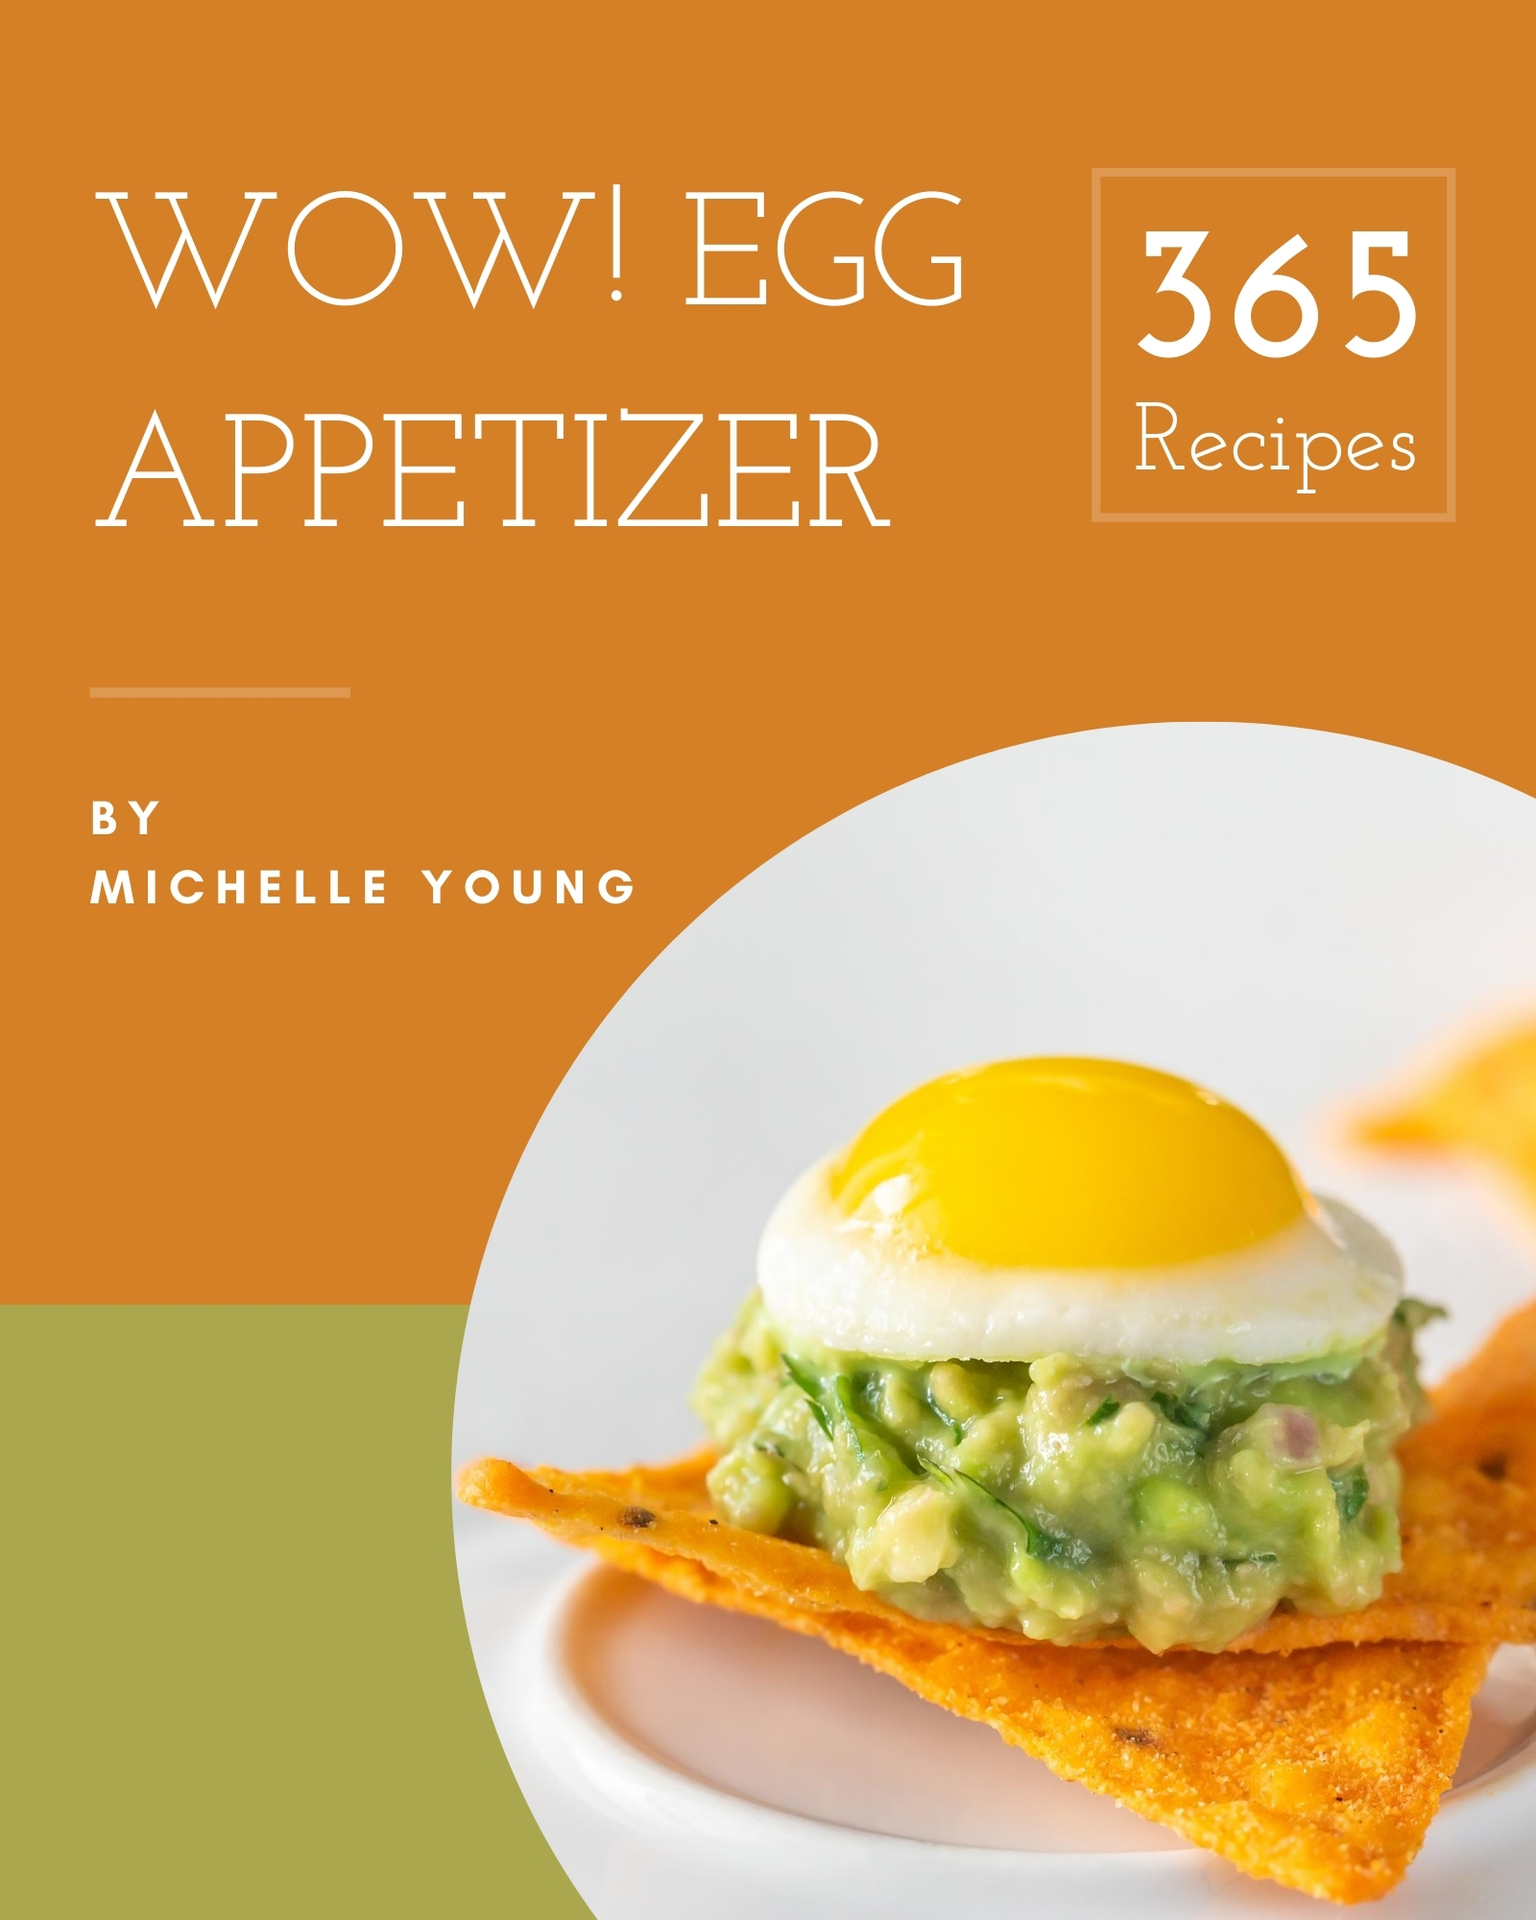 Wow 365 Egg Appetizer Recipes Wow 365 Egg Appetizer Recipes - Volume 1 - photo 1